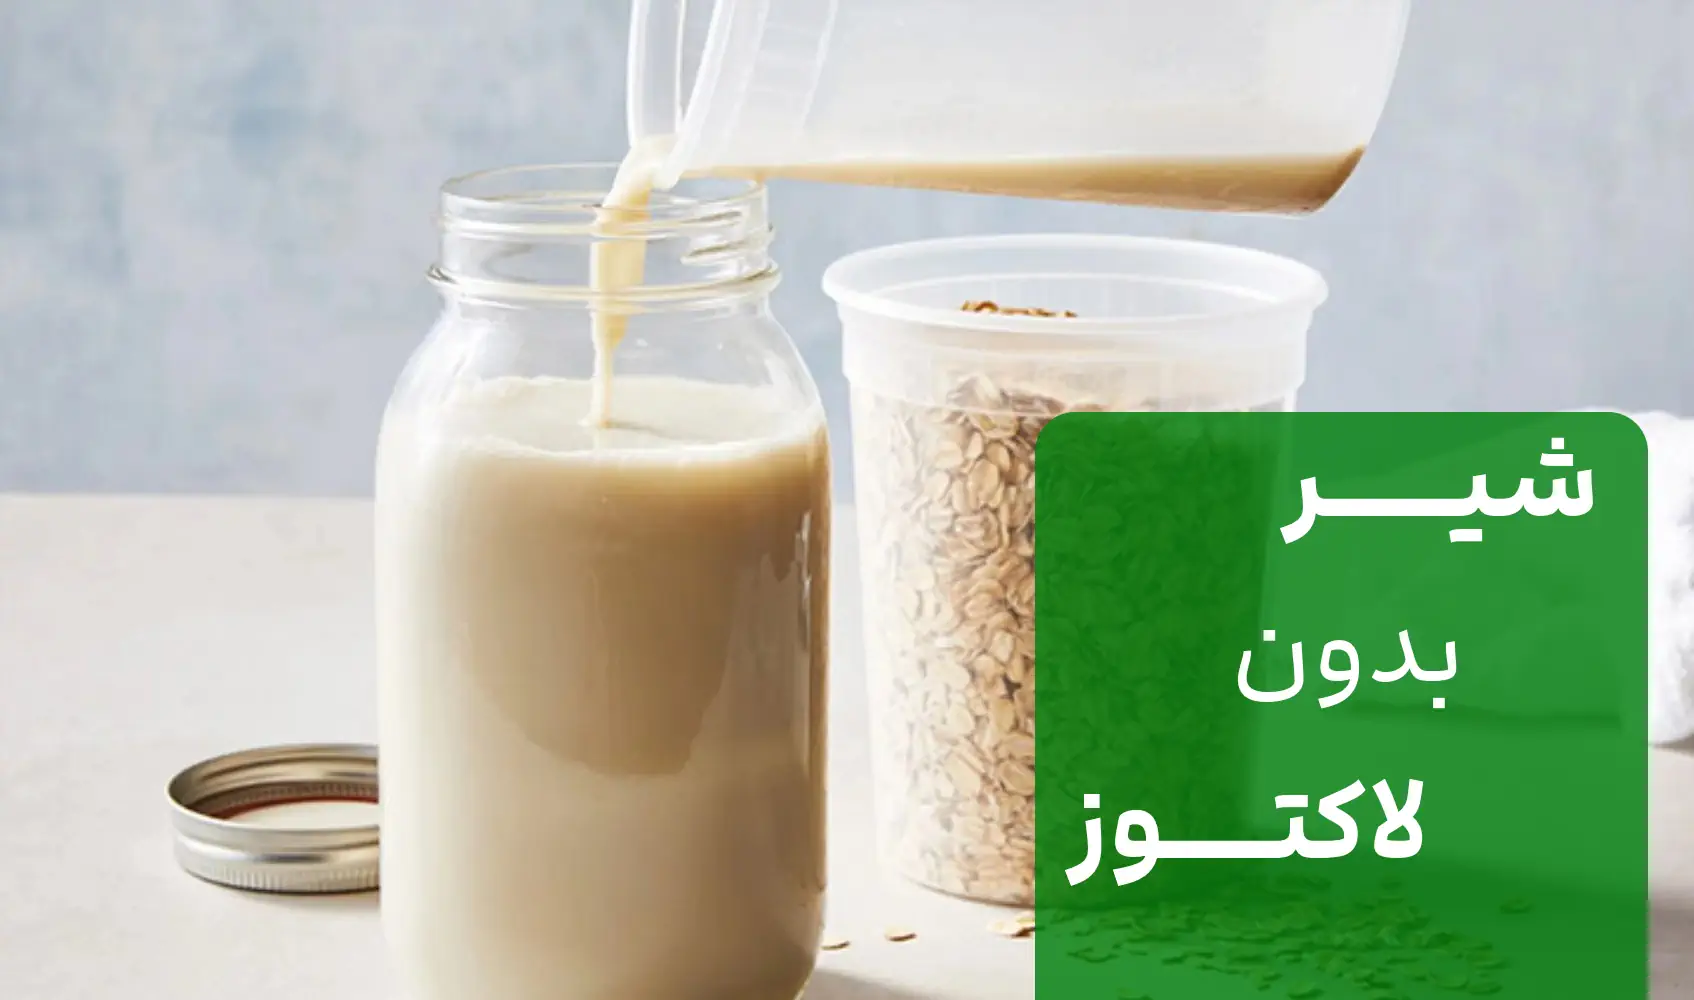 شیر مغذی و خوشمزه مخصوص افراد حساس به لاکتوز